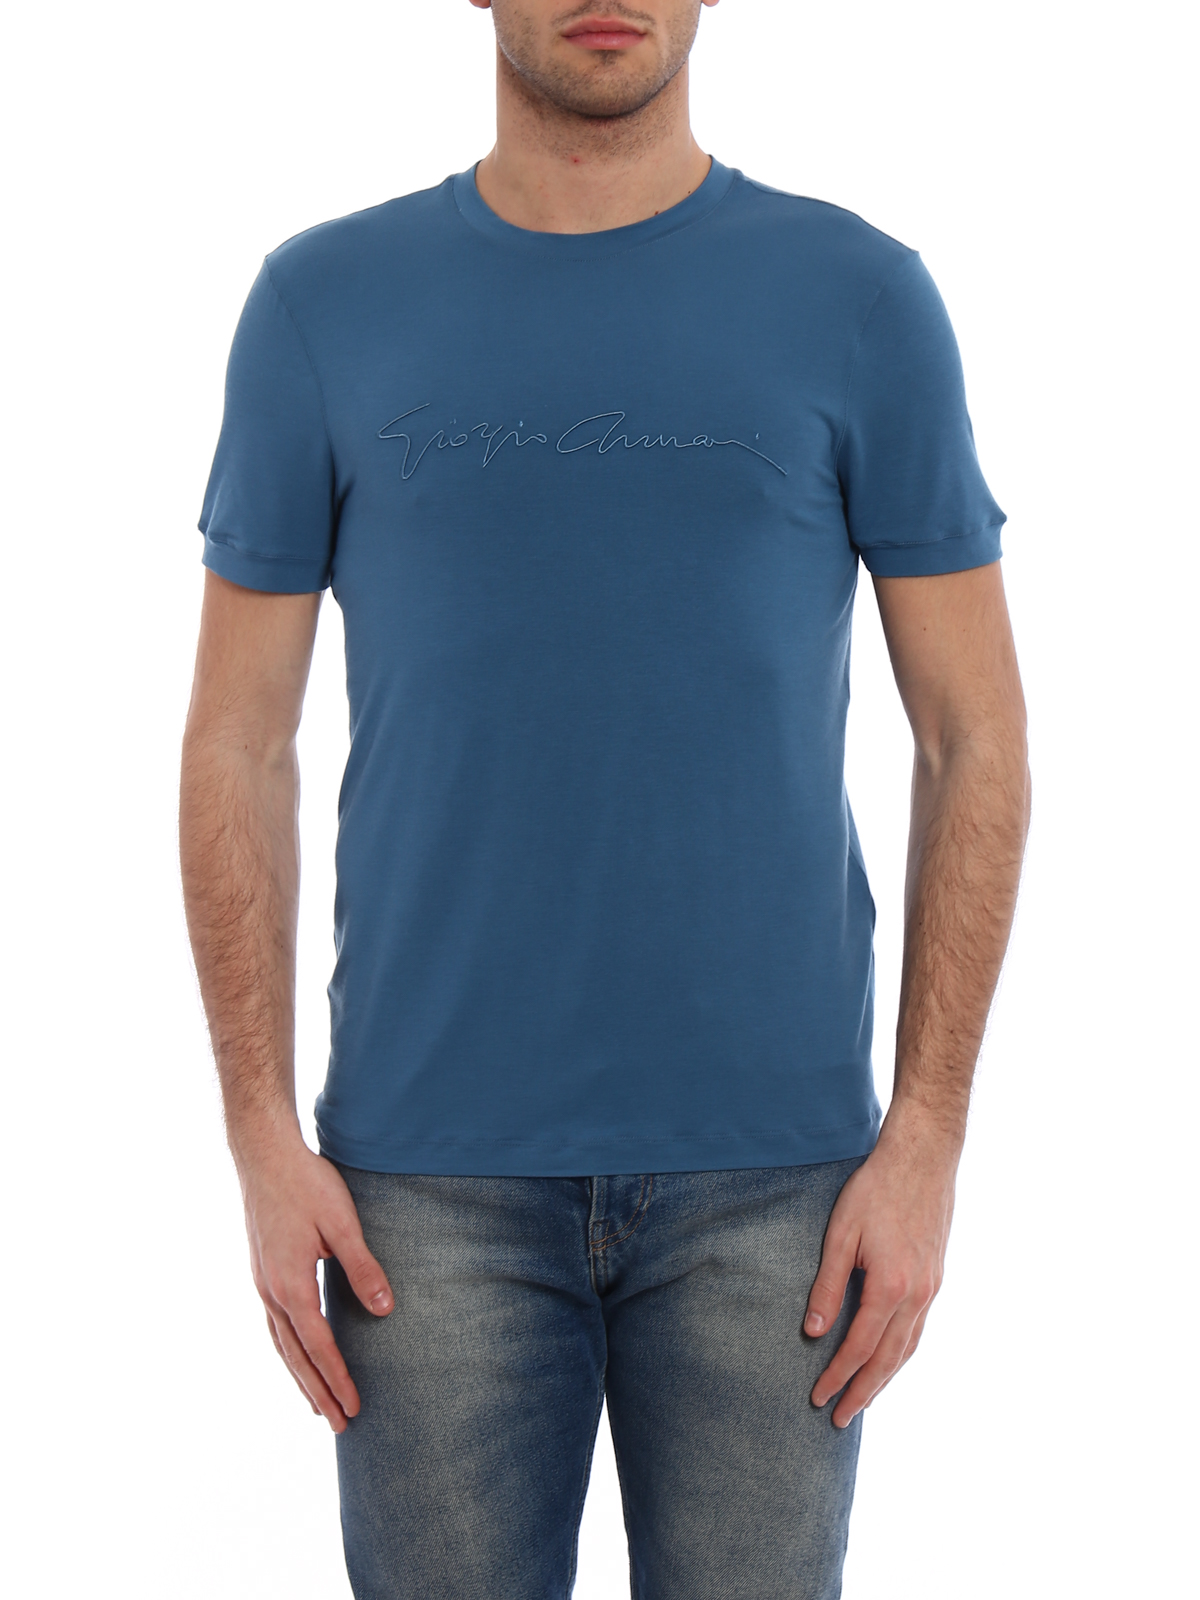 Giorgio Armani Embroidered Logo T-Shirt